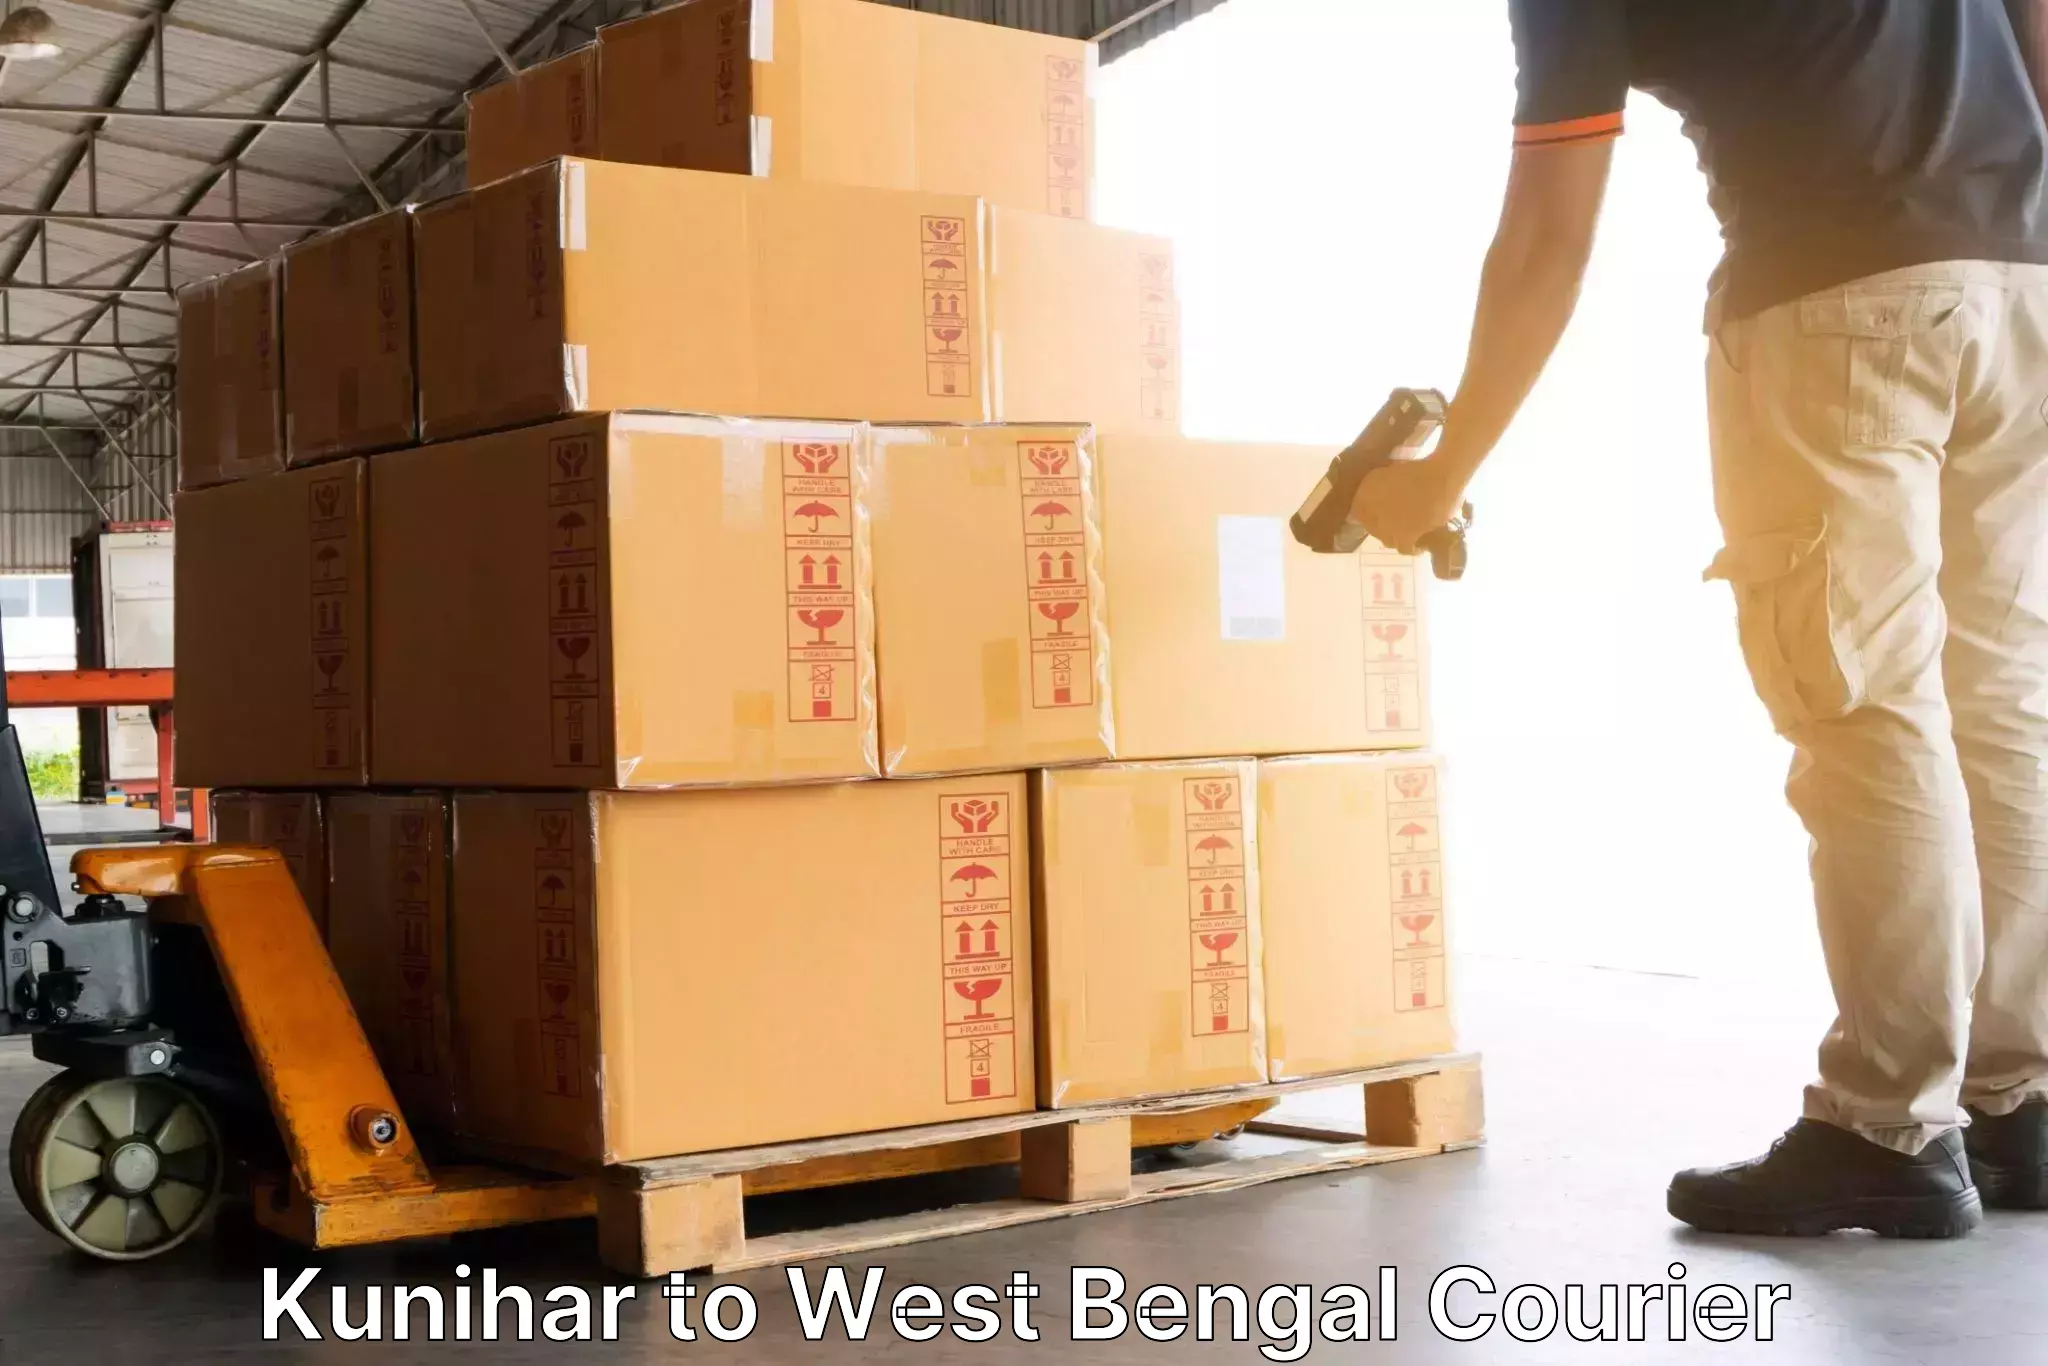 24-hour courier service Kunihar to Dinhata